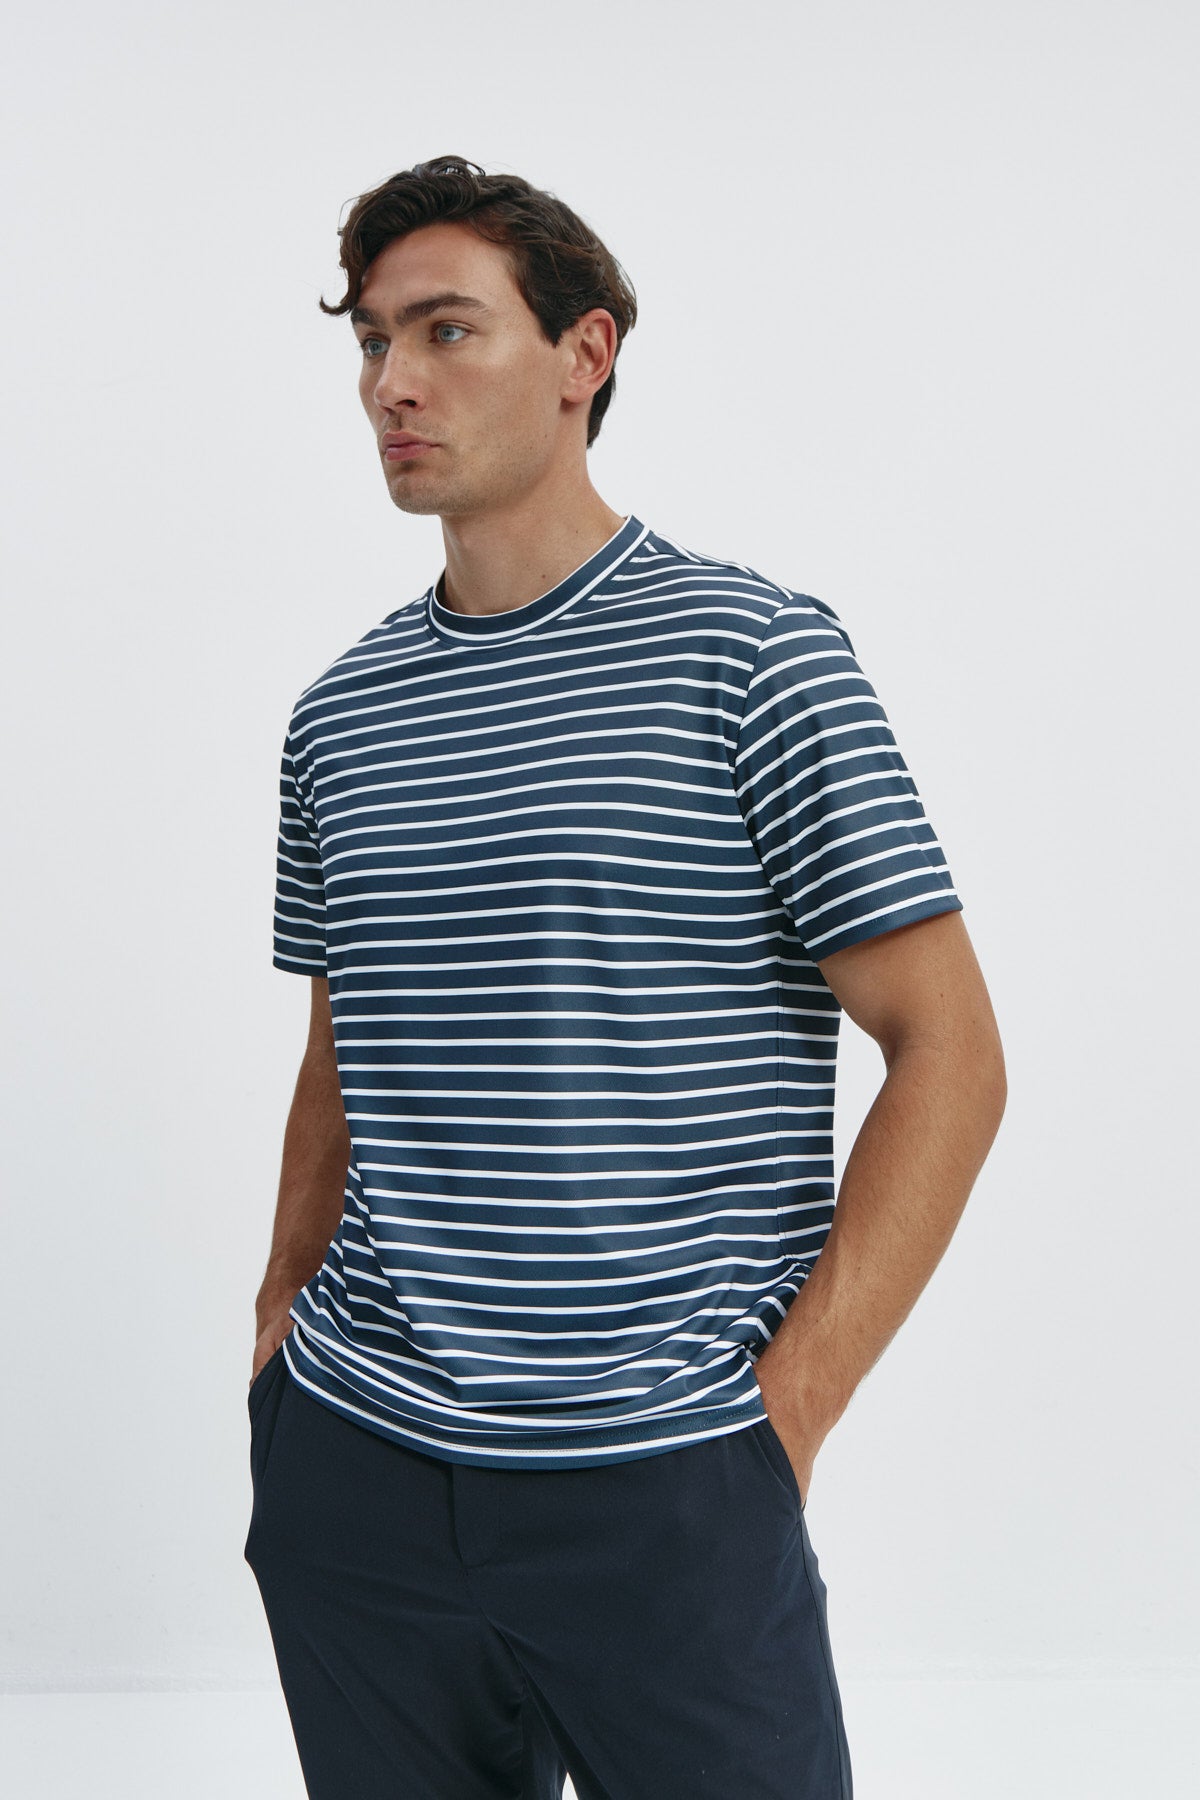 Camiseta de hombre con rayas negras de Sepiia, estilo y versatilidad en una prenda resistente. Foto frente